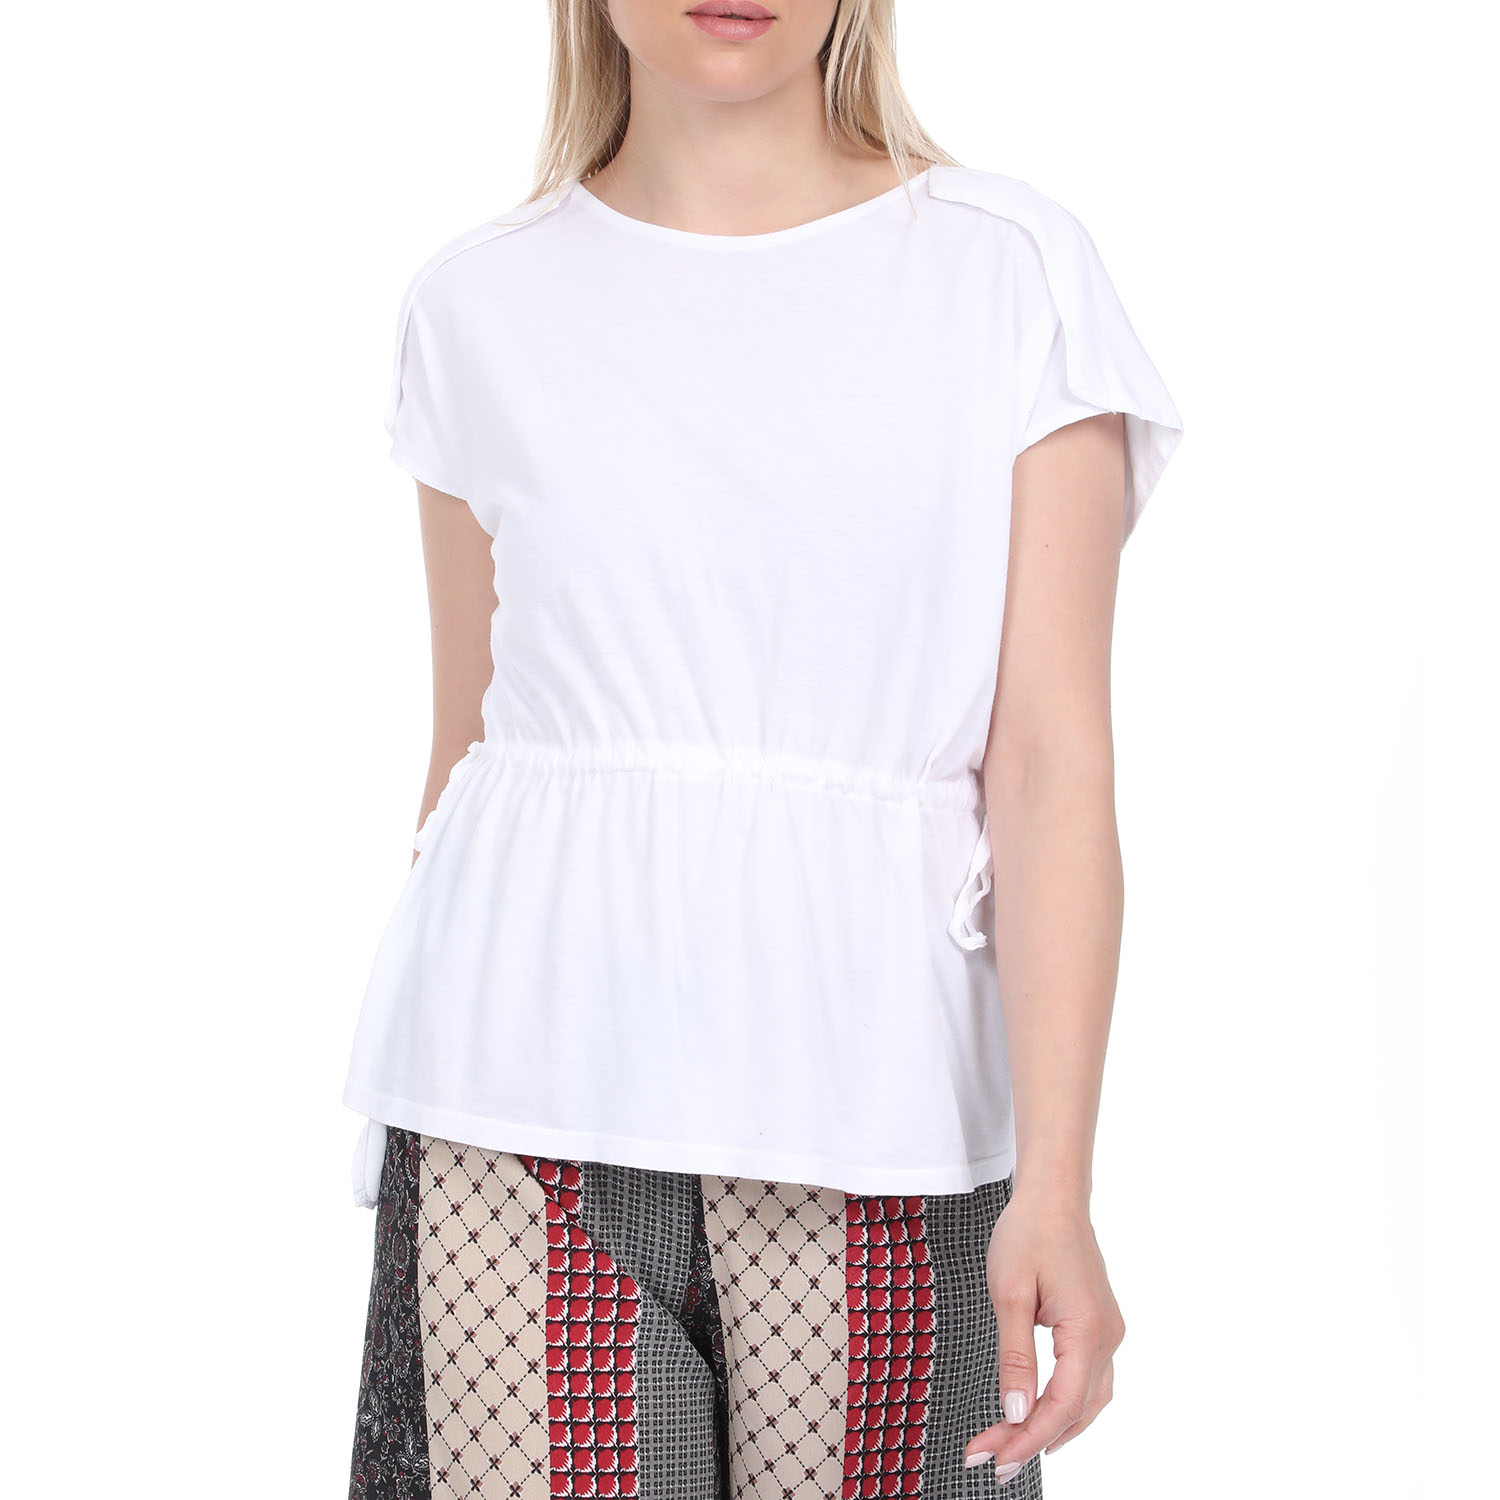 Γυναικεία/Ρούχα/Μπλούζες/Κοντομάνικες ATTRATTIVO - Γυναικεία μπλούζα ATTRATTIVO λευκή